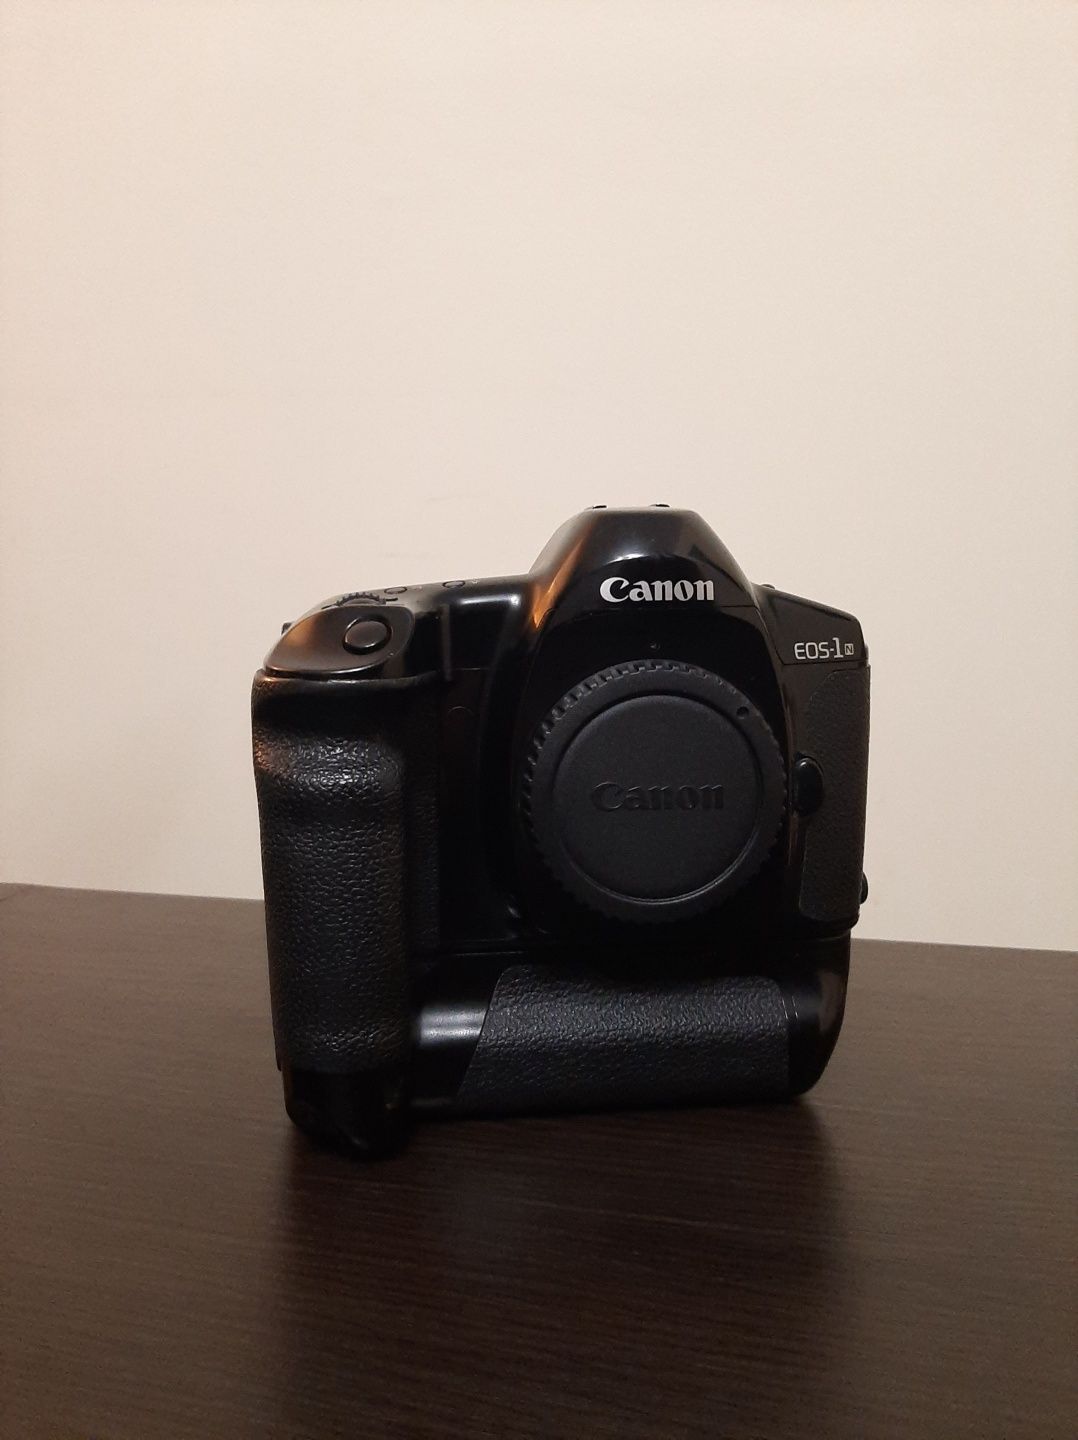 Aparat analogowy Canon Eos 1n + Grip